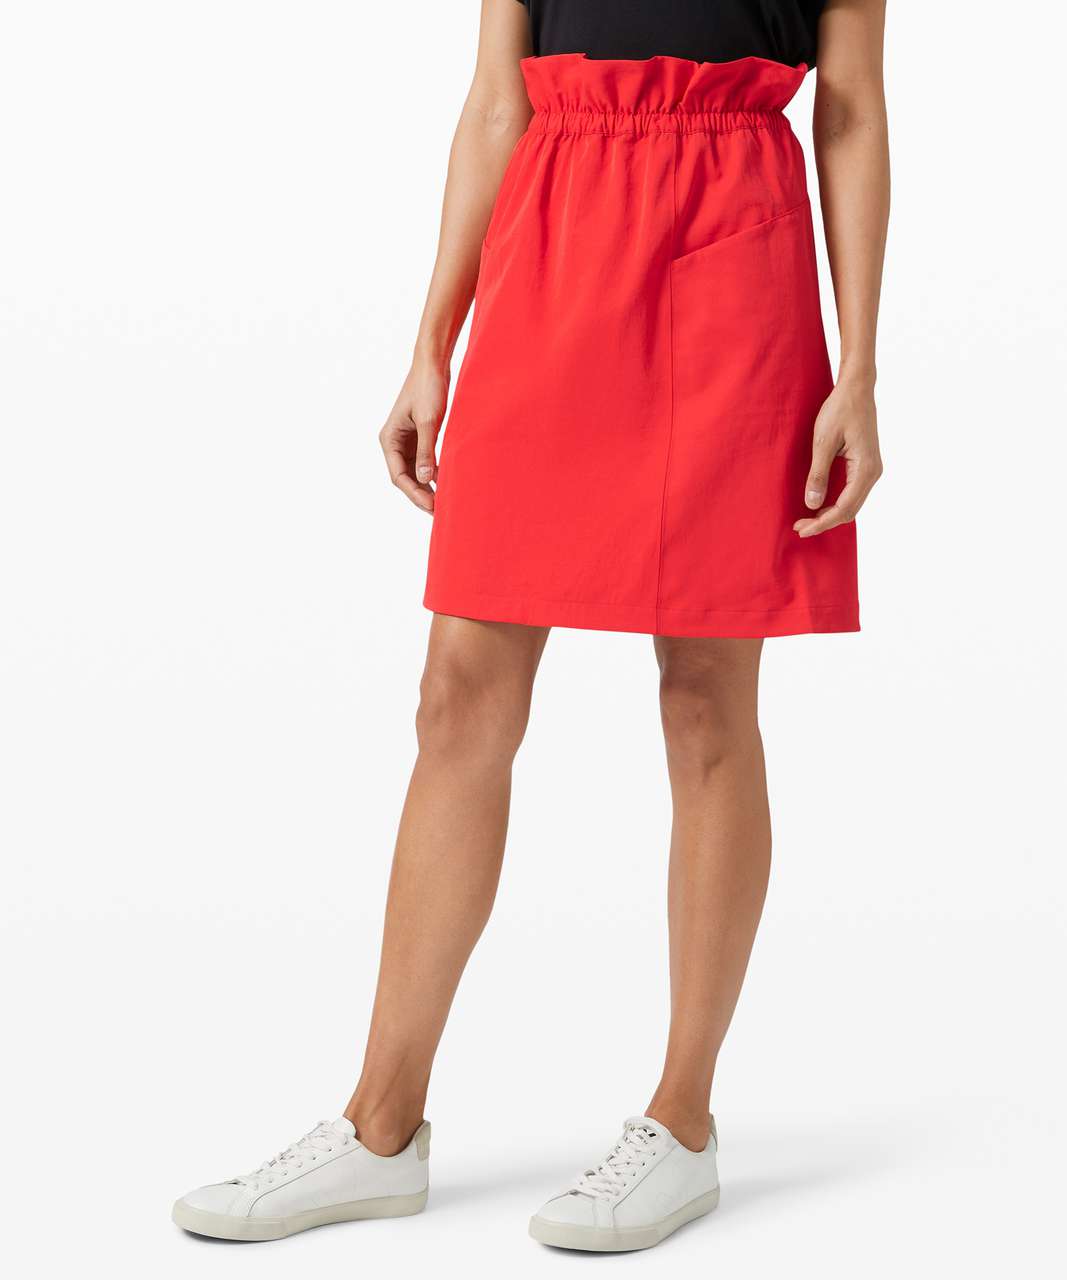 Lululemon Trip Taker Skirt - Carnation Red